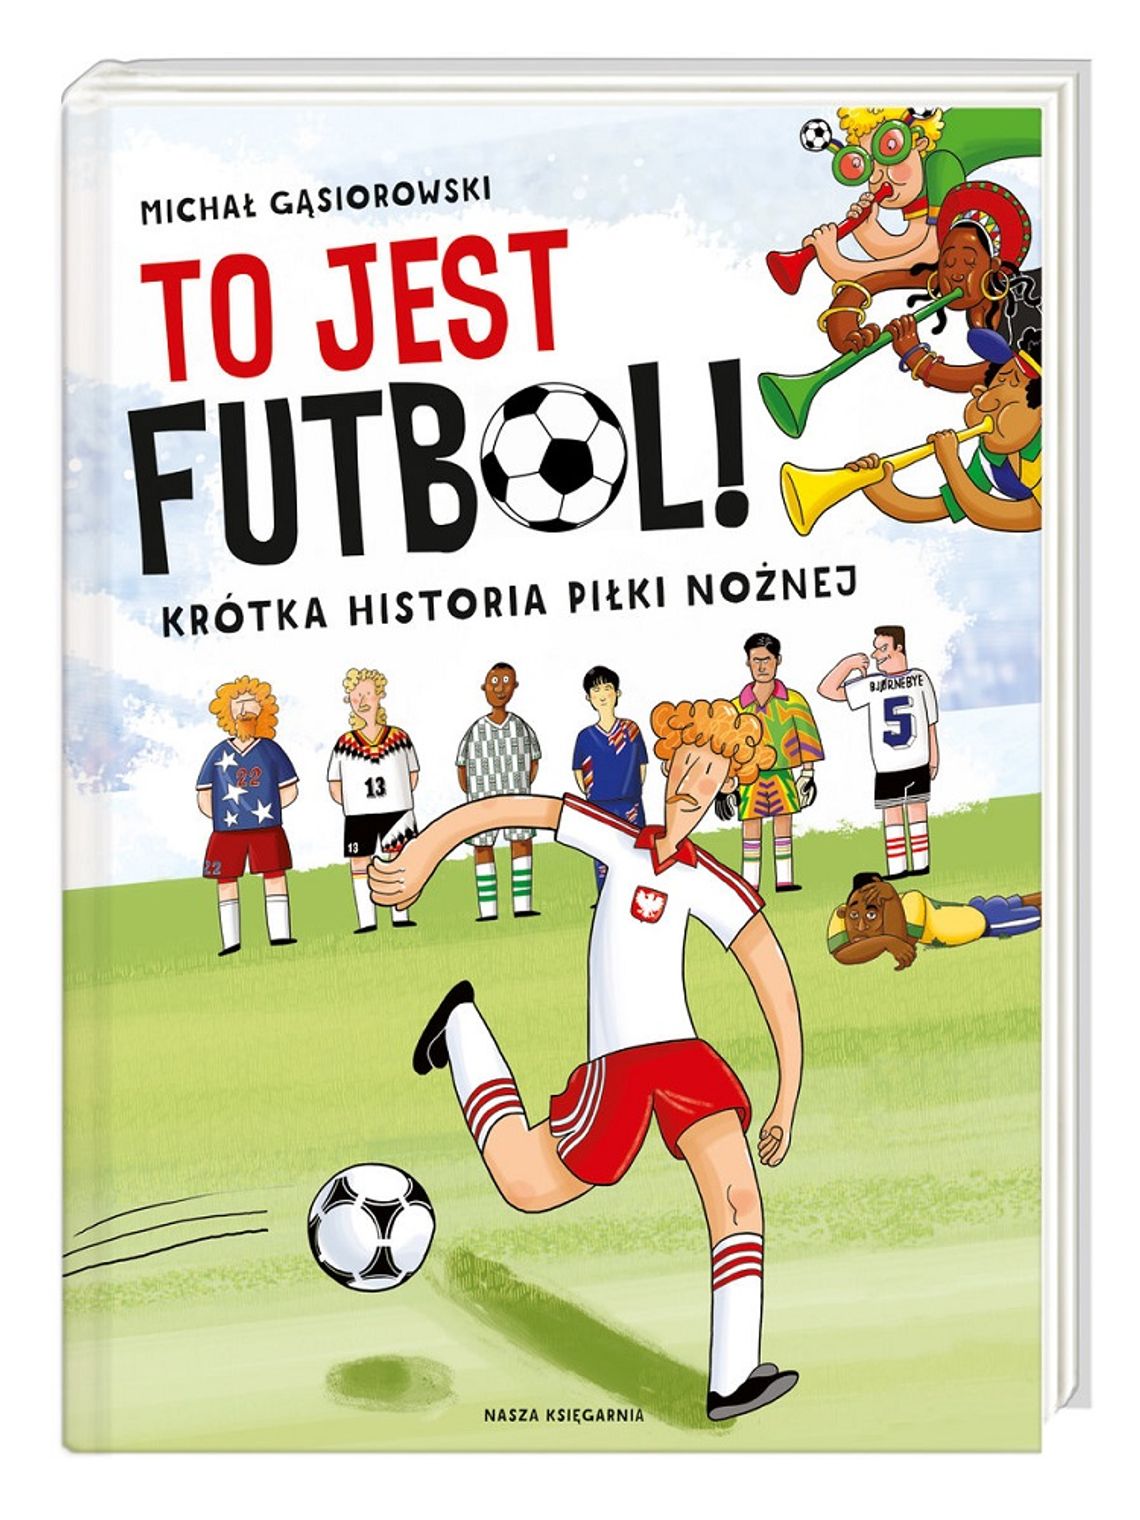 Michał Gąsiorowski "To jest futbol! Krótka historia piłki nożnej"; wyd. Nasza Księgarnia